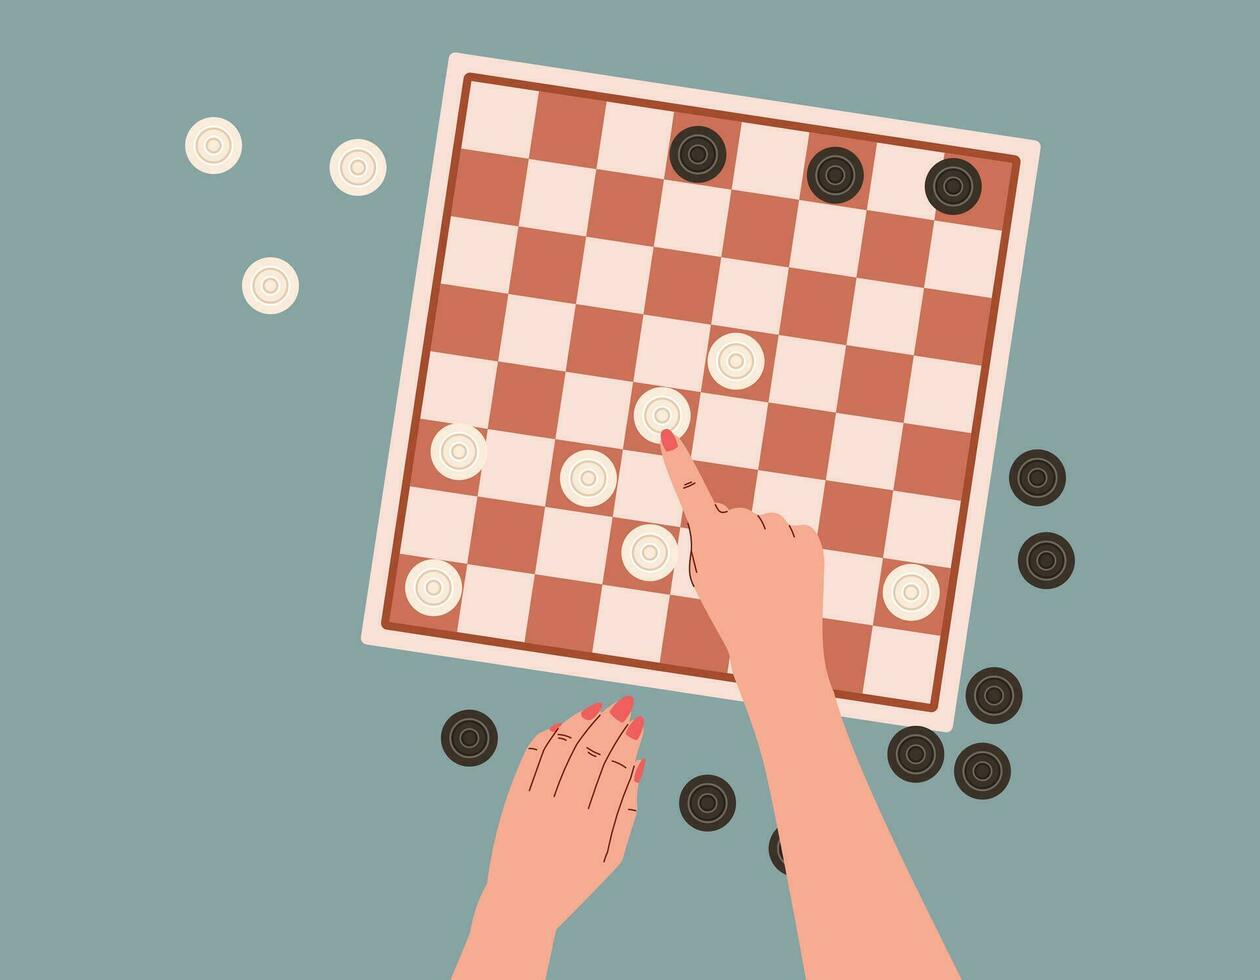 plano personas jugando juego de damas, parte superior vista. manos haciendo un moverse en un lógica tablero juego. dibujos animados aislado vector ajedrez tablero.